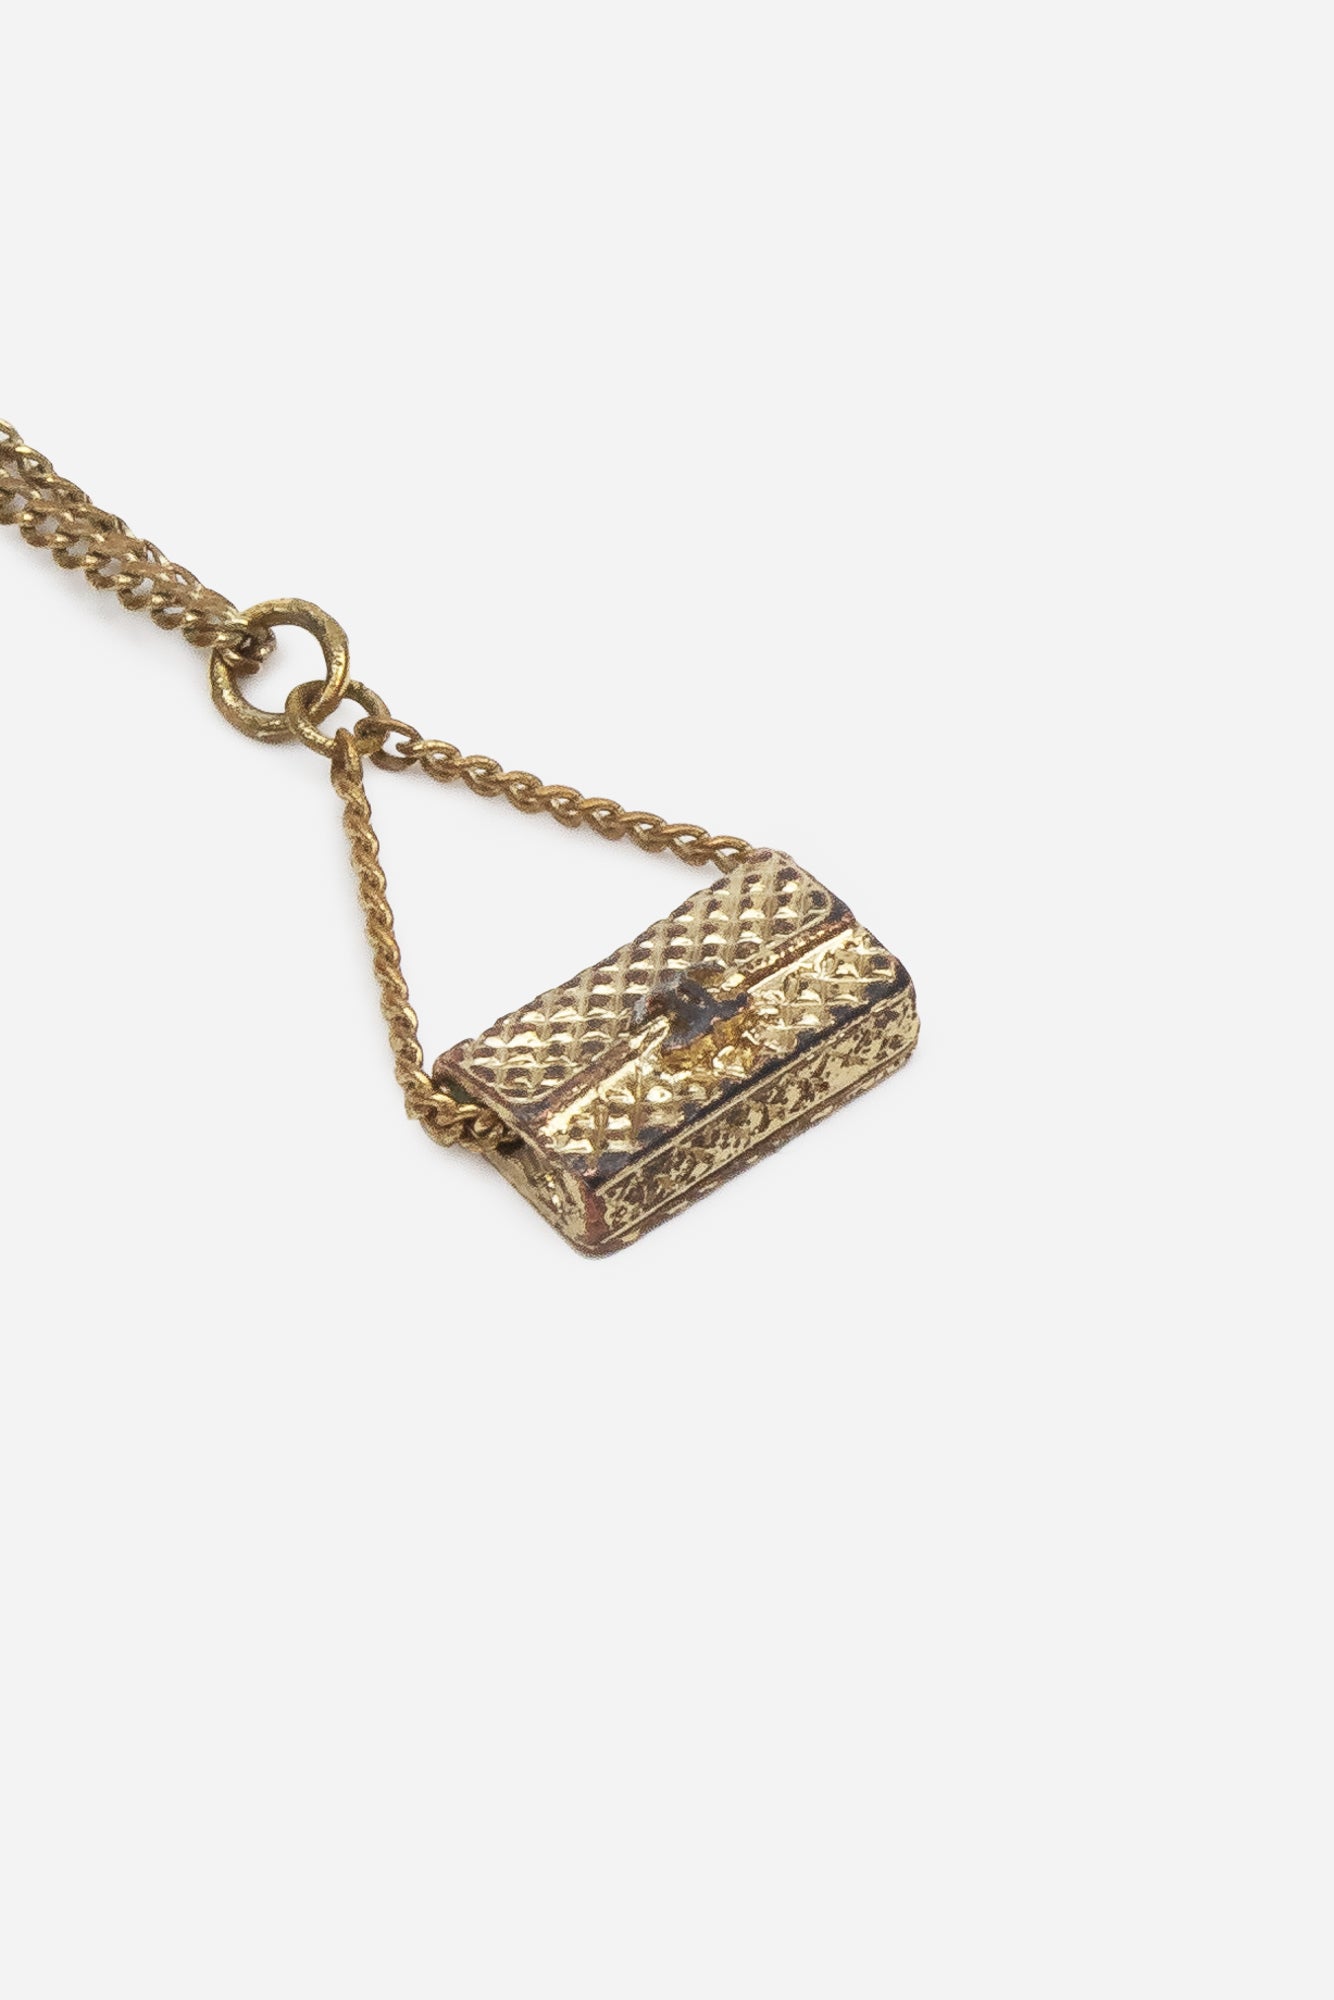 Vintage CC Flap Bag Charm Necklace